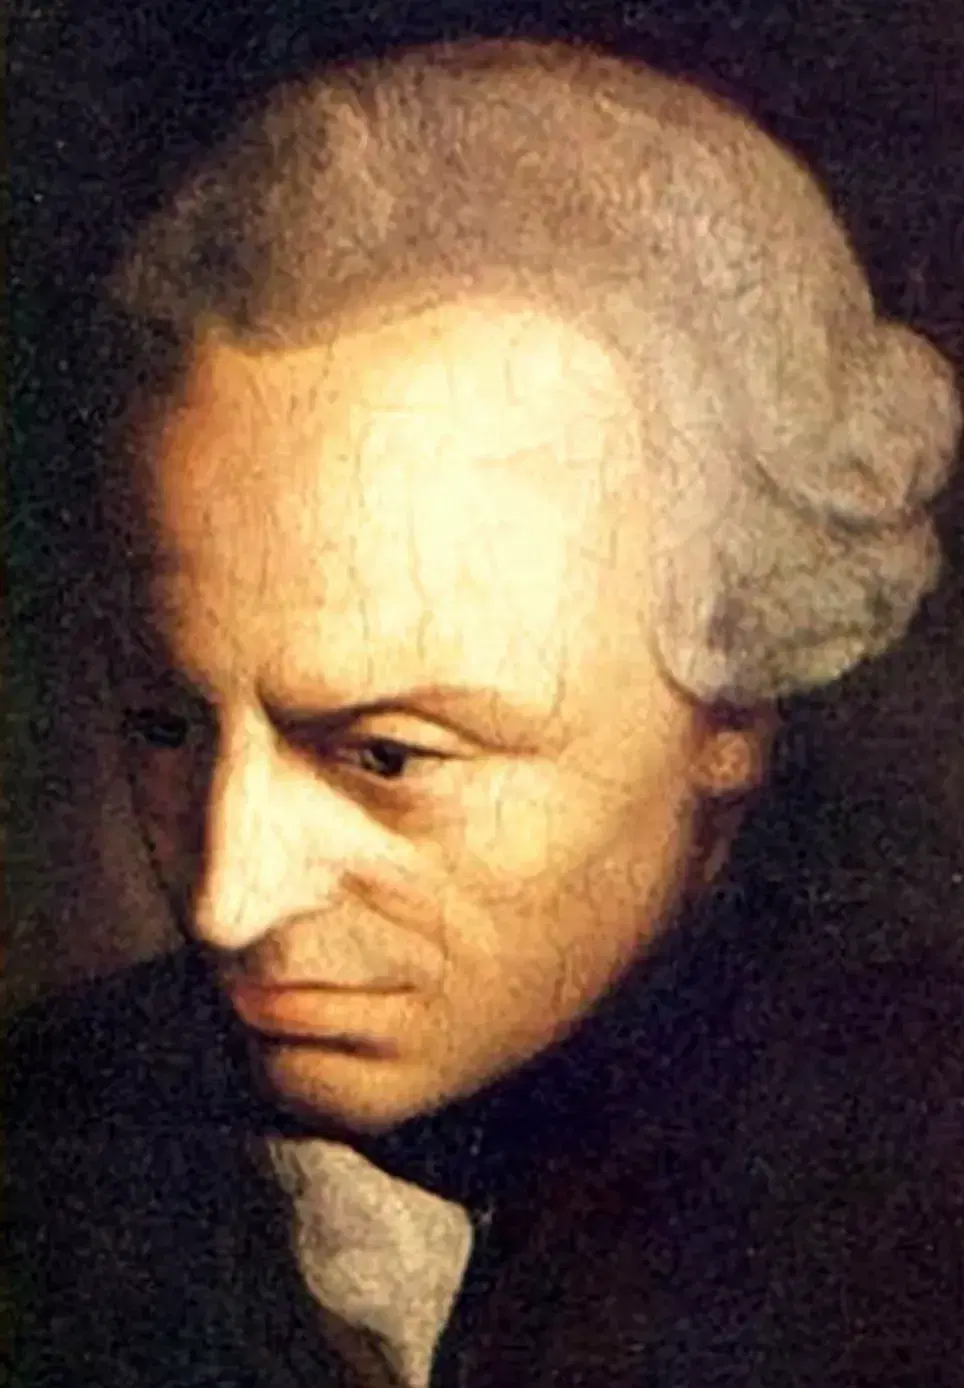 Ritratto di Immanuel Kant